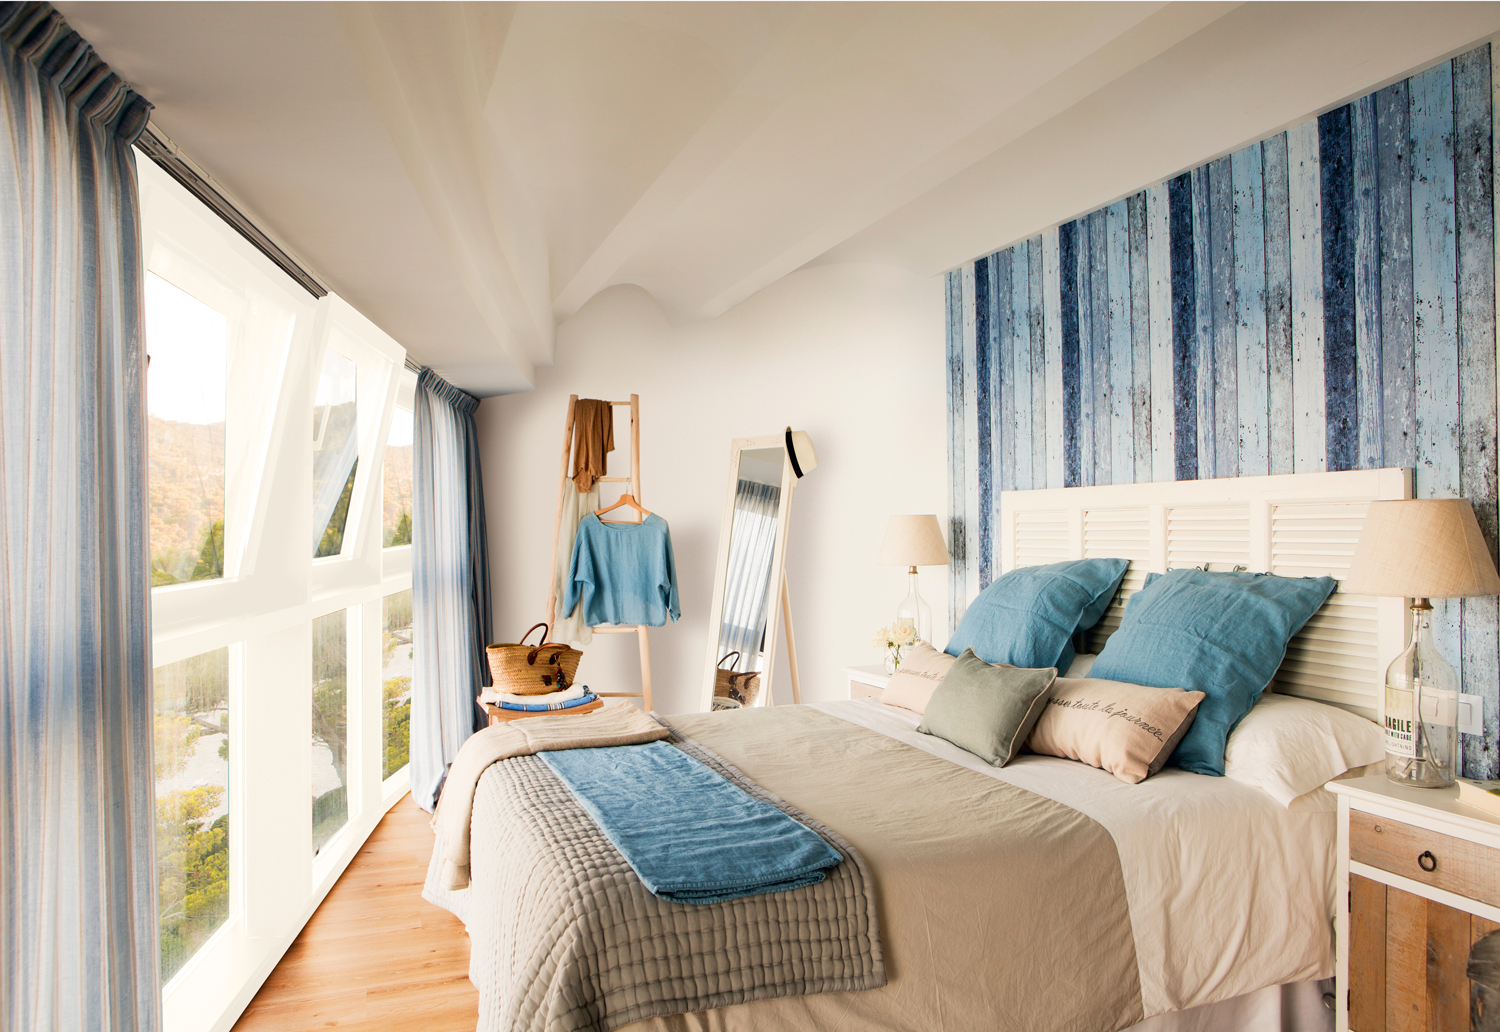 00409306. Dormitorio en blancos y azules. Pared del cabecero con lamas azules y gran ventanal 00409306